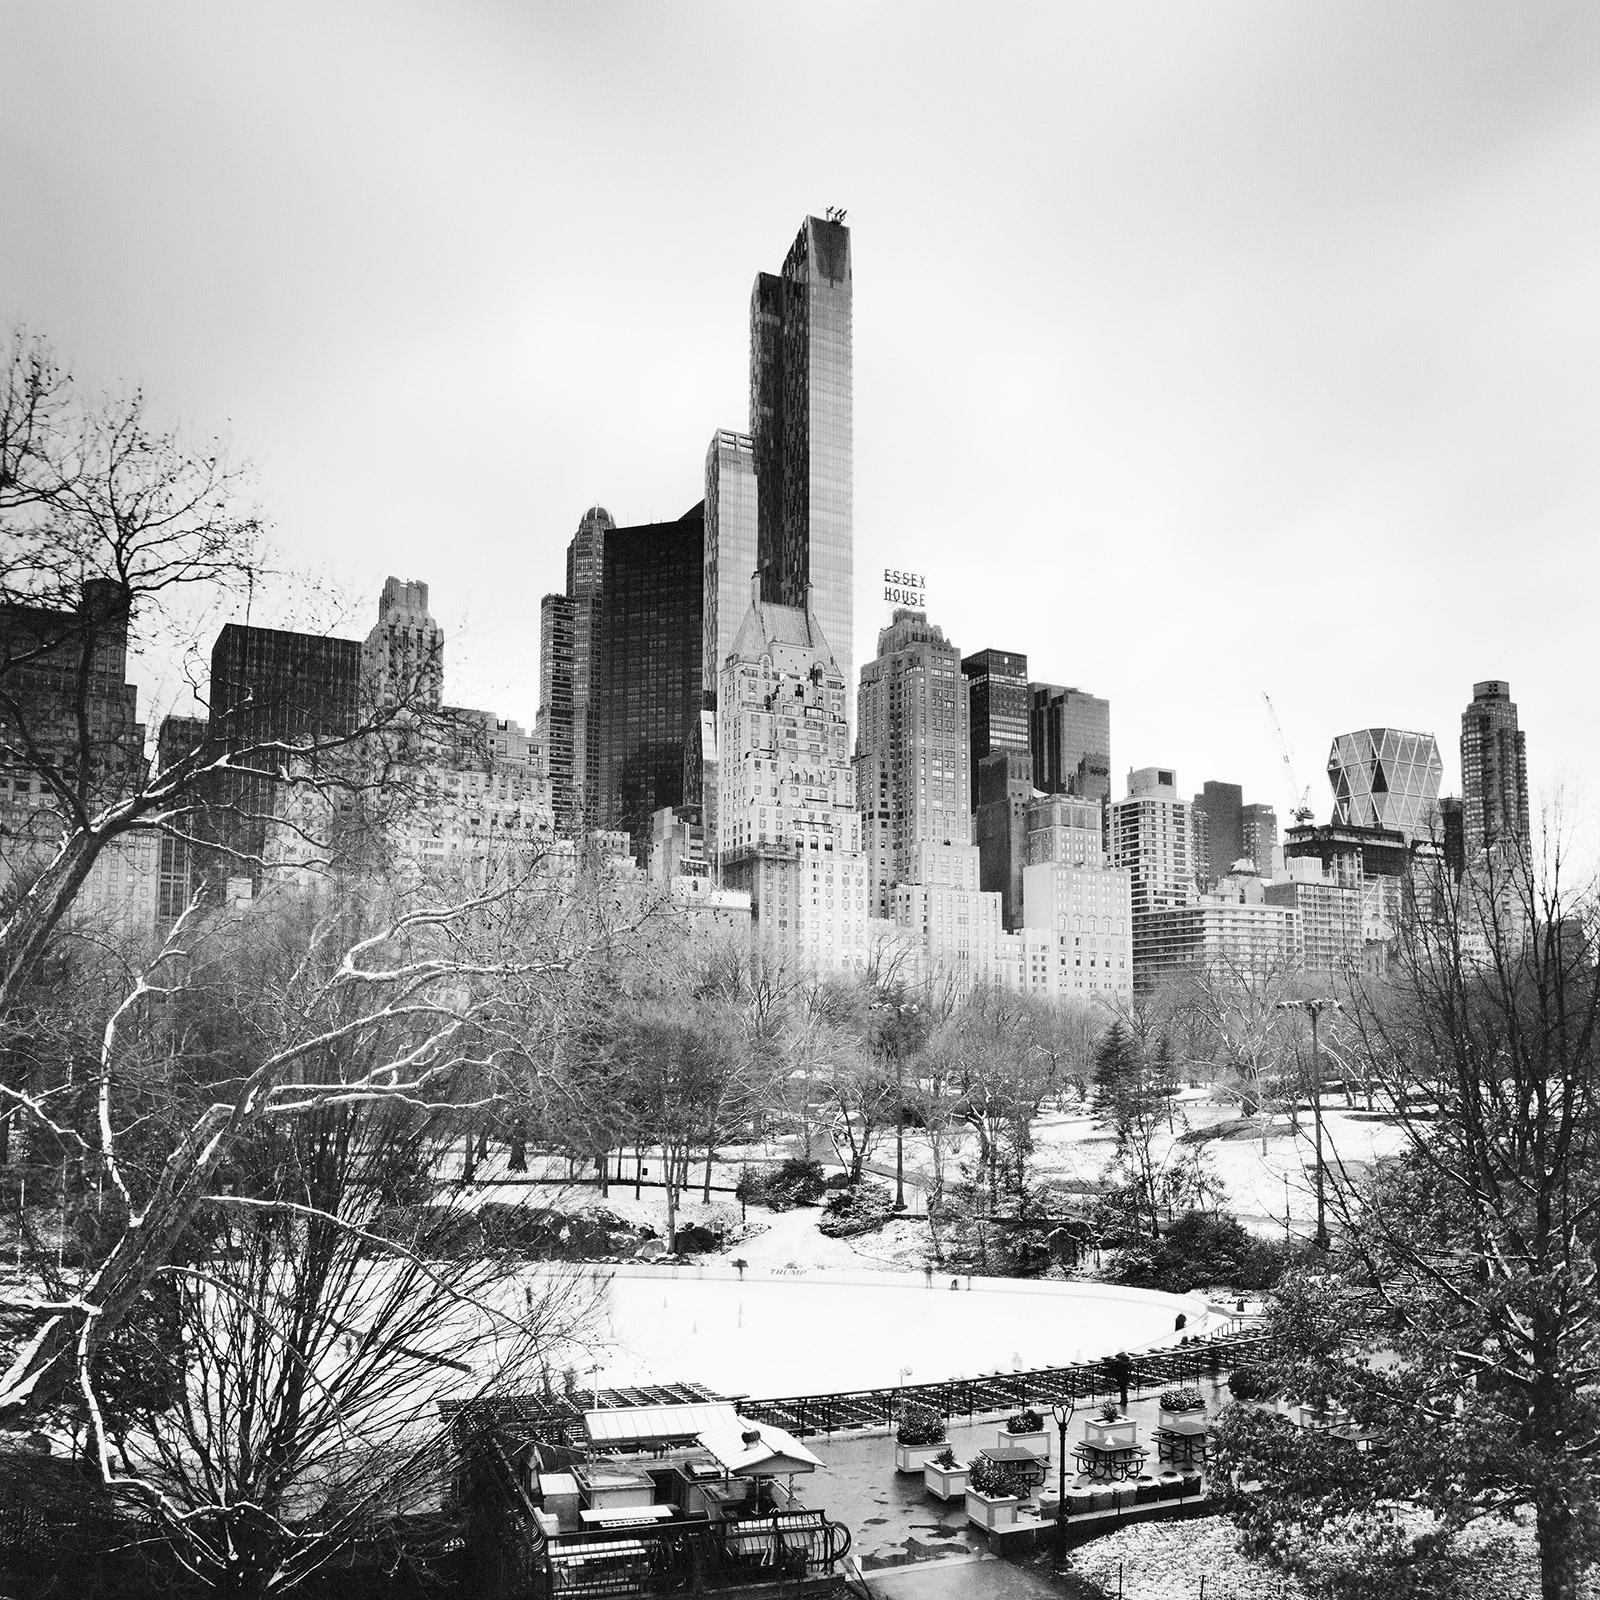 Essex House, Central Park, New York, USA, Schwarz-Weiß-Fotografie, Stadtlandschaft